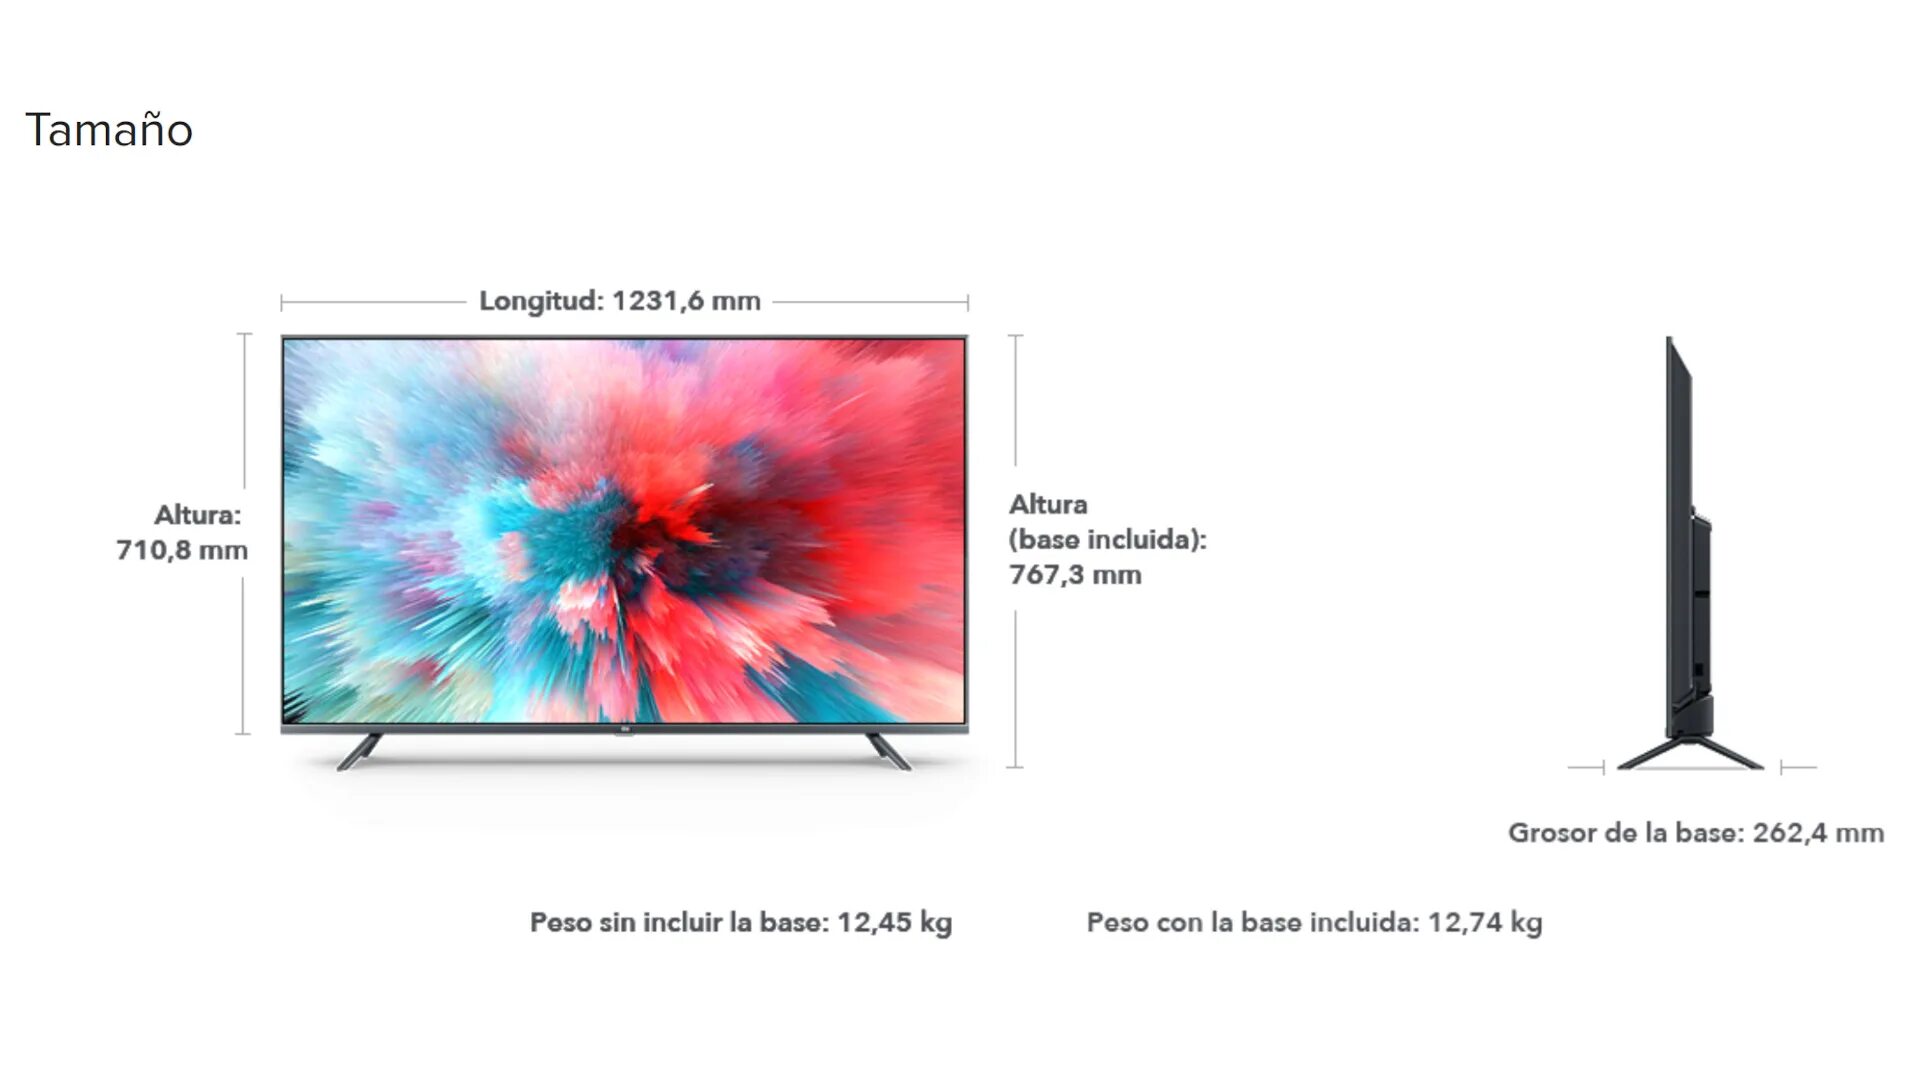 Телевизор высота 70 см. Телевизор самсунг 55 дюймов габариты в см. Размер телевизора самсунг 50 дюймов. Xiaomi mi TV 4s 55 Размеры. Телевизор самсунг 55 Размеры.